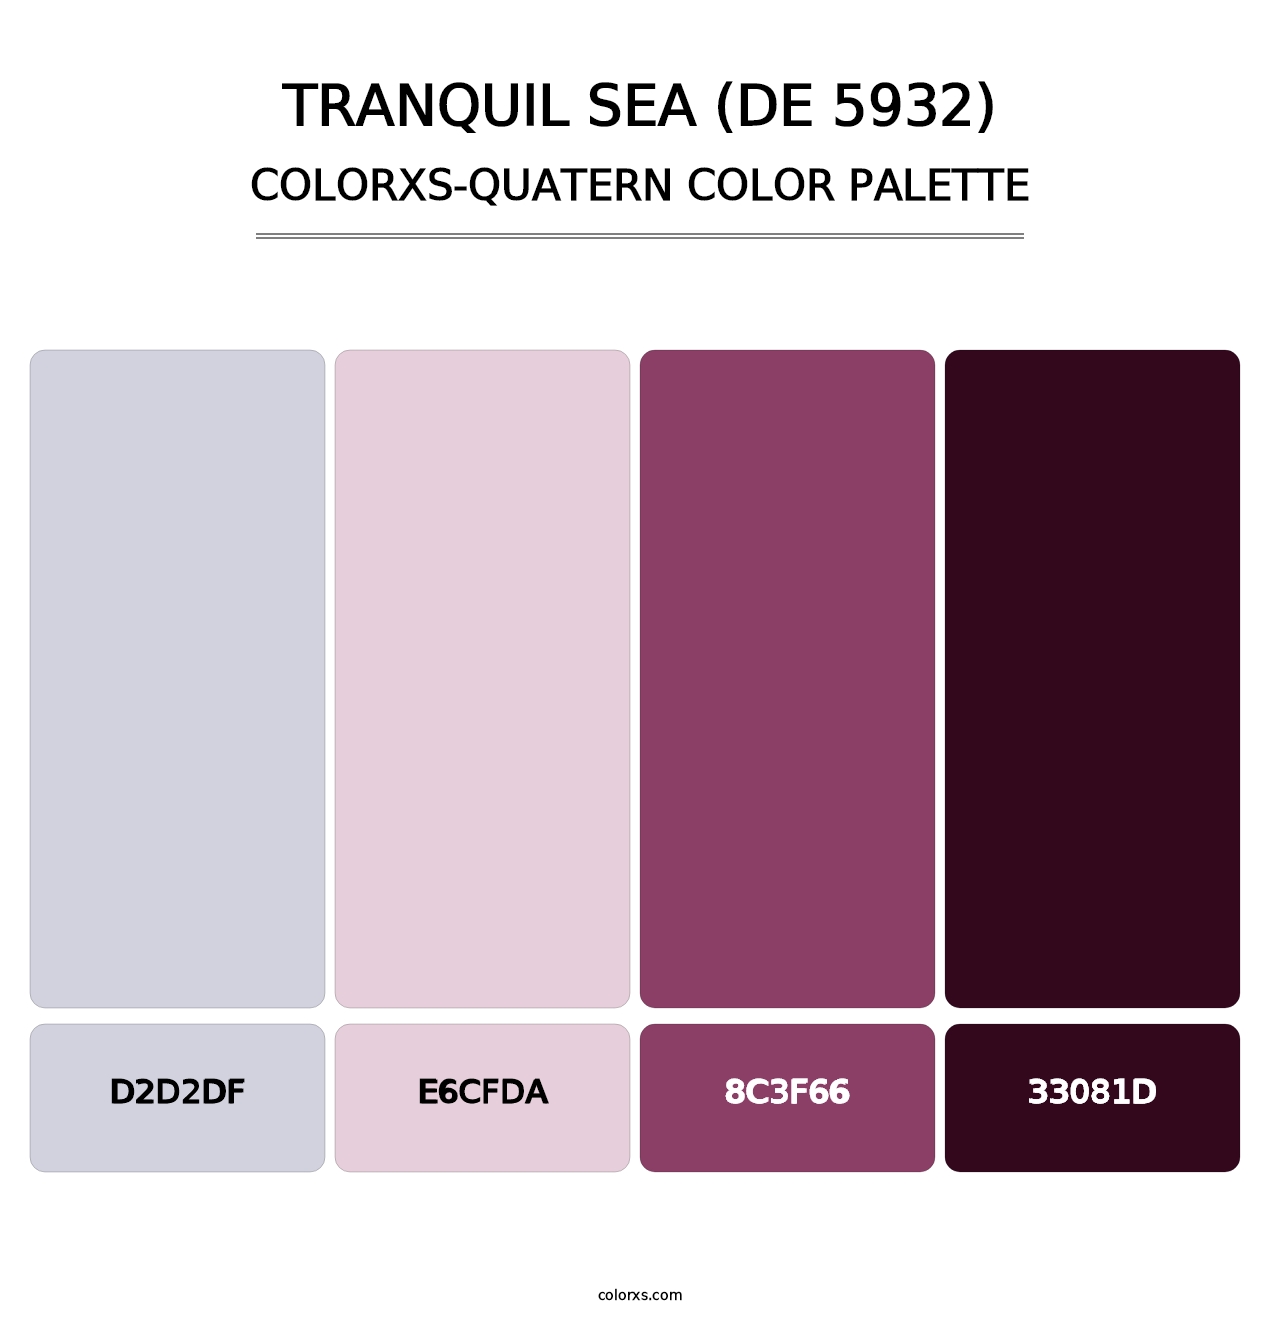 Tranquil Sea (DE 5932) - Colorxs Quatern Palette